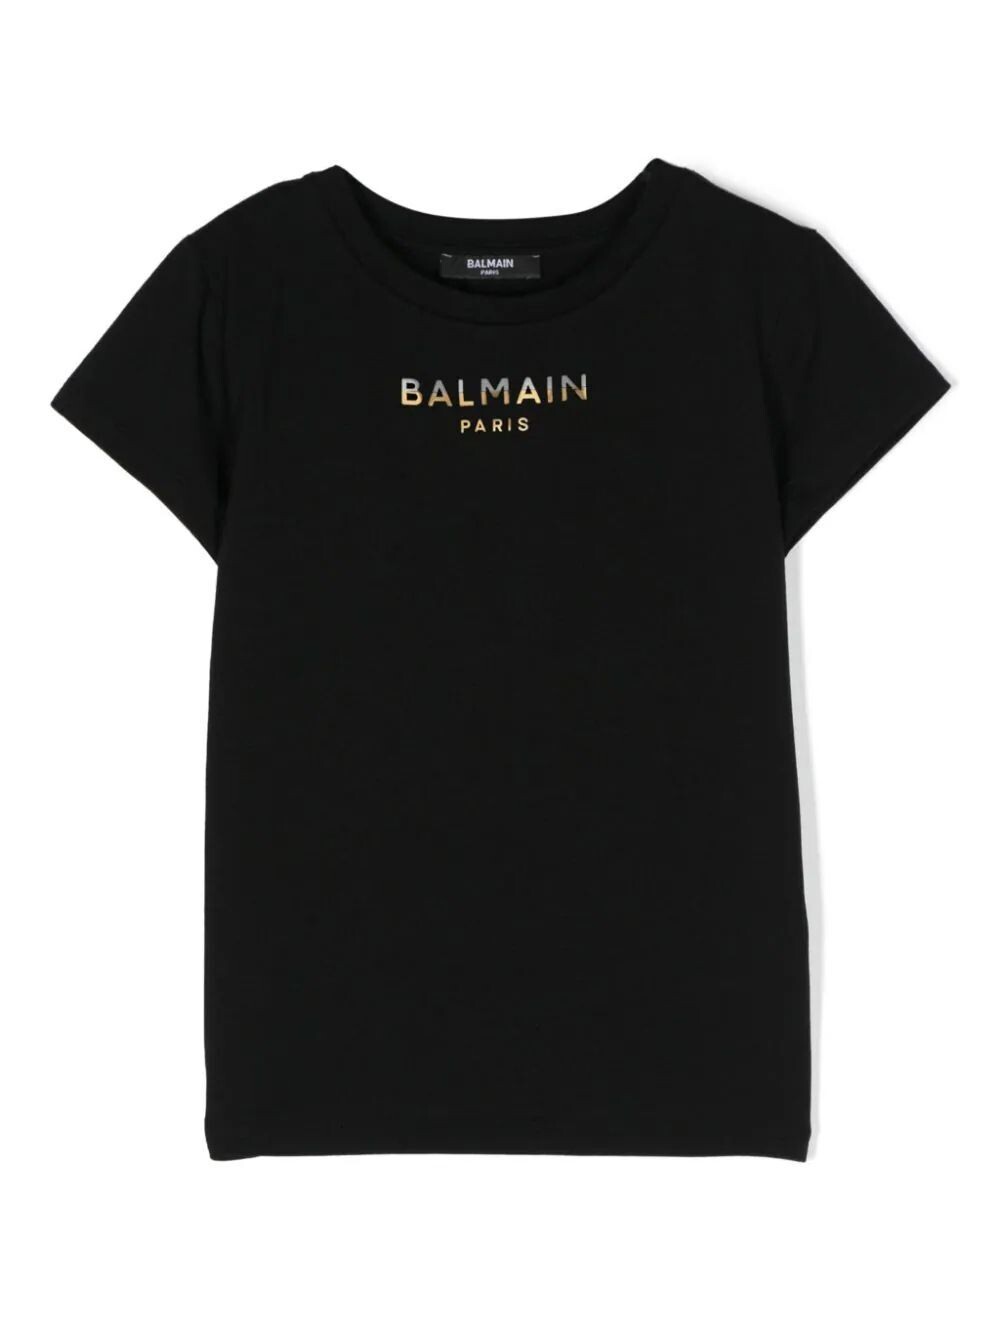 Balmain - T-shirt nera logo oro argento, Size: 13 anni